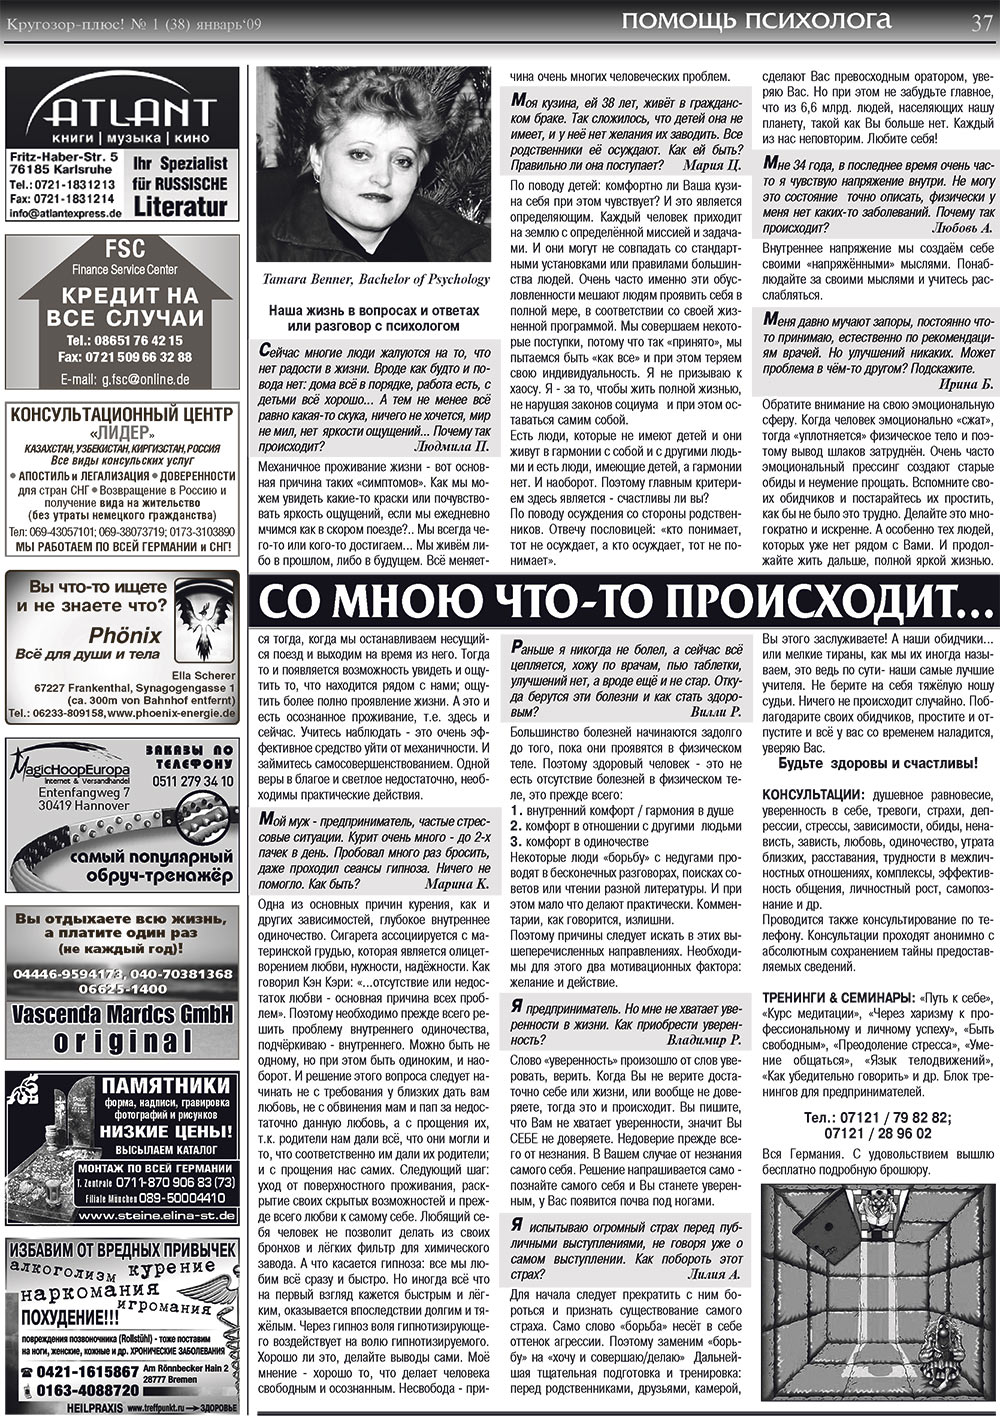 Кругозор плюс!, газета. 2009 №1 стр.37